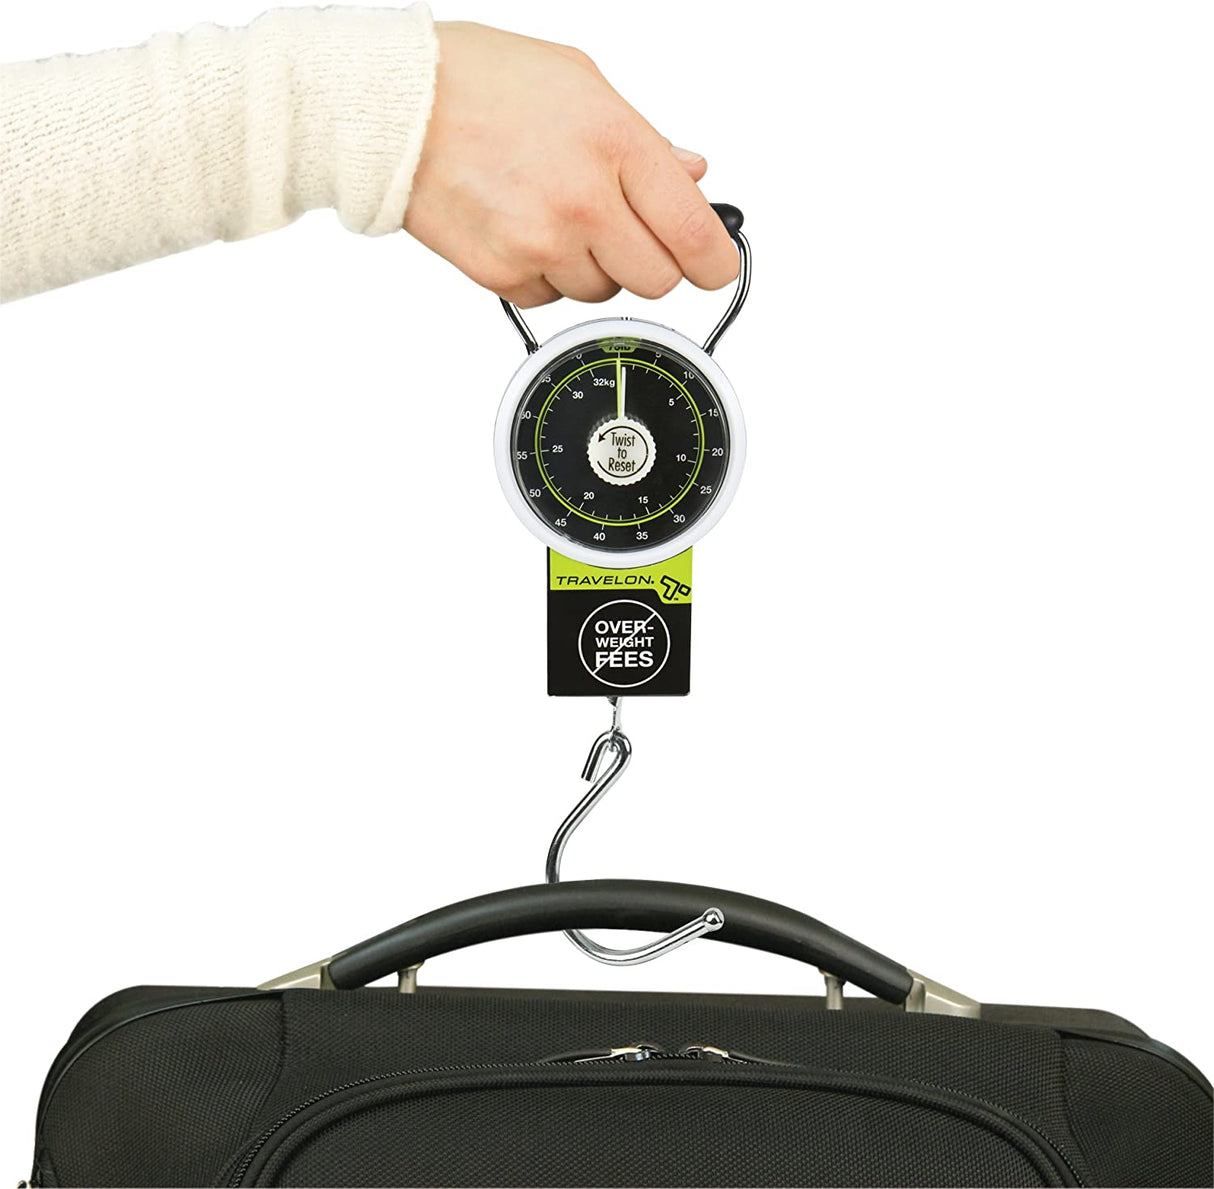 Báscula dital para maletas de viaje máx 50 kg Travel negro - Decathlon